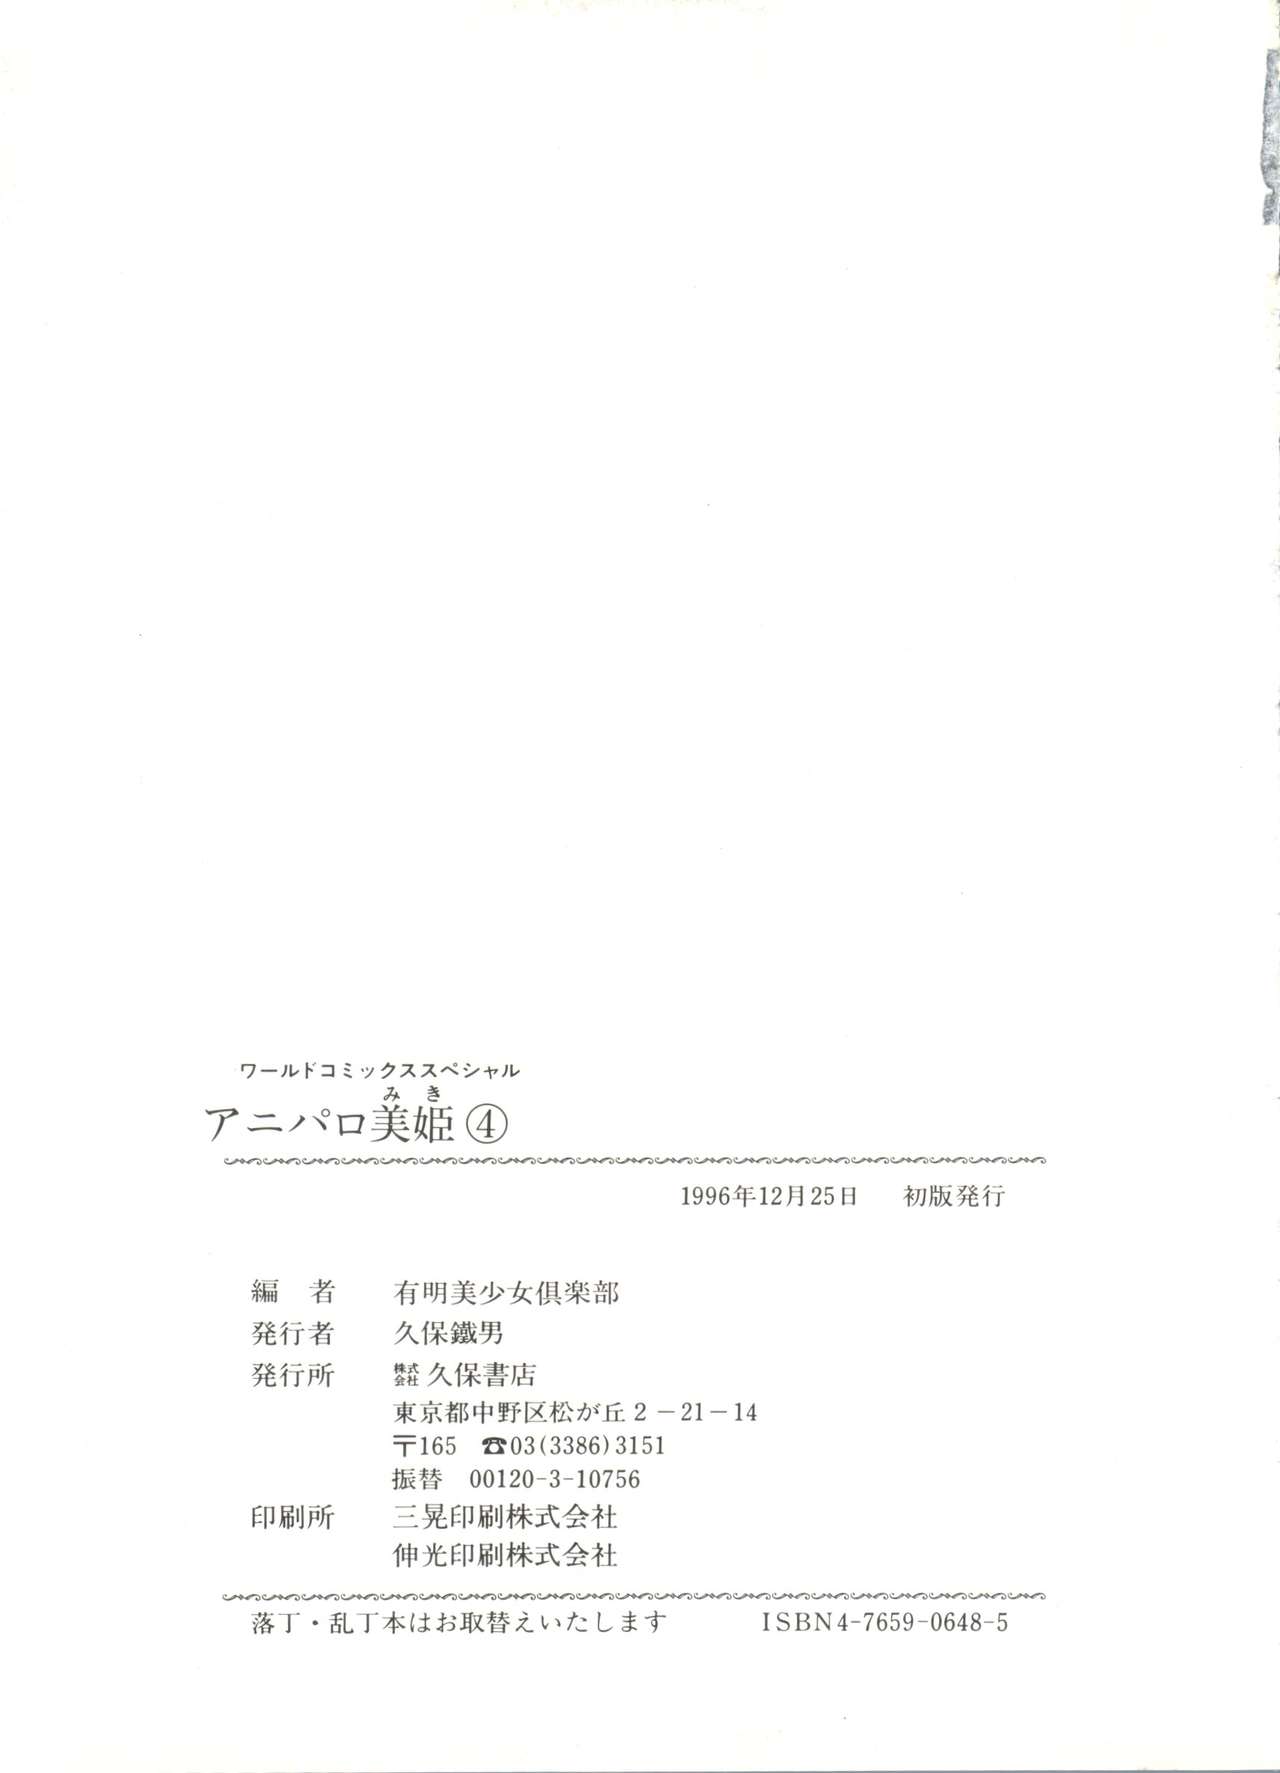 [Anthology] Aniparo Miki 4 (Various) [アンソロジー] アニパロ美姫4 (よろず)